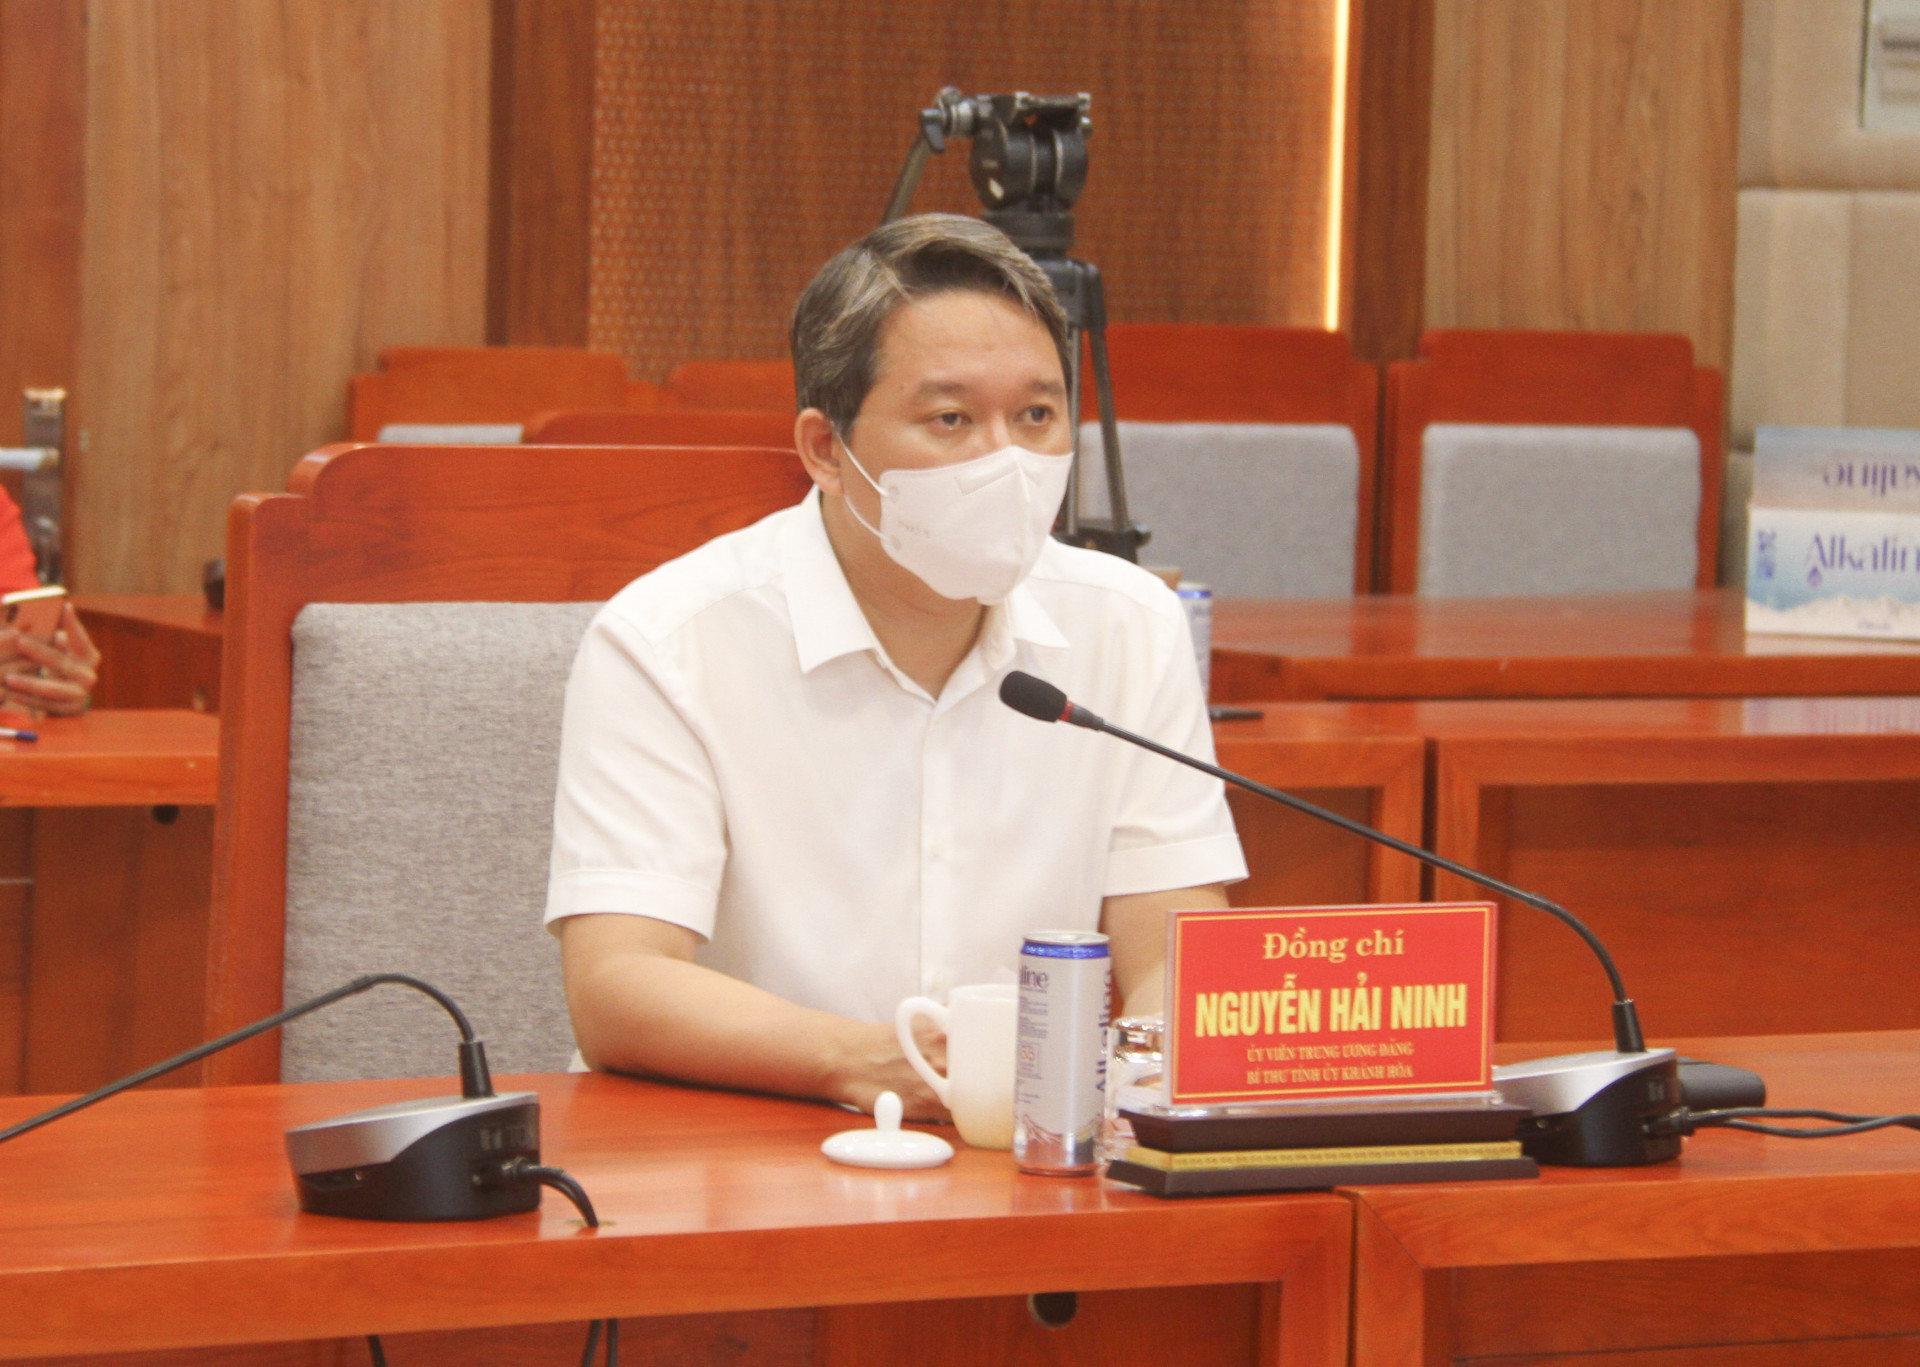 Bí thư Tỉnh ủy Nguyễn Hải Ninh yêu cầu đẩy mạnh tuyên truyền để người dân cài đặt ứng dụng Bluezone thực hiện việc quét mã QR để góp phần kiểm soát dịch Covid-19